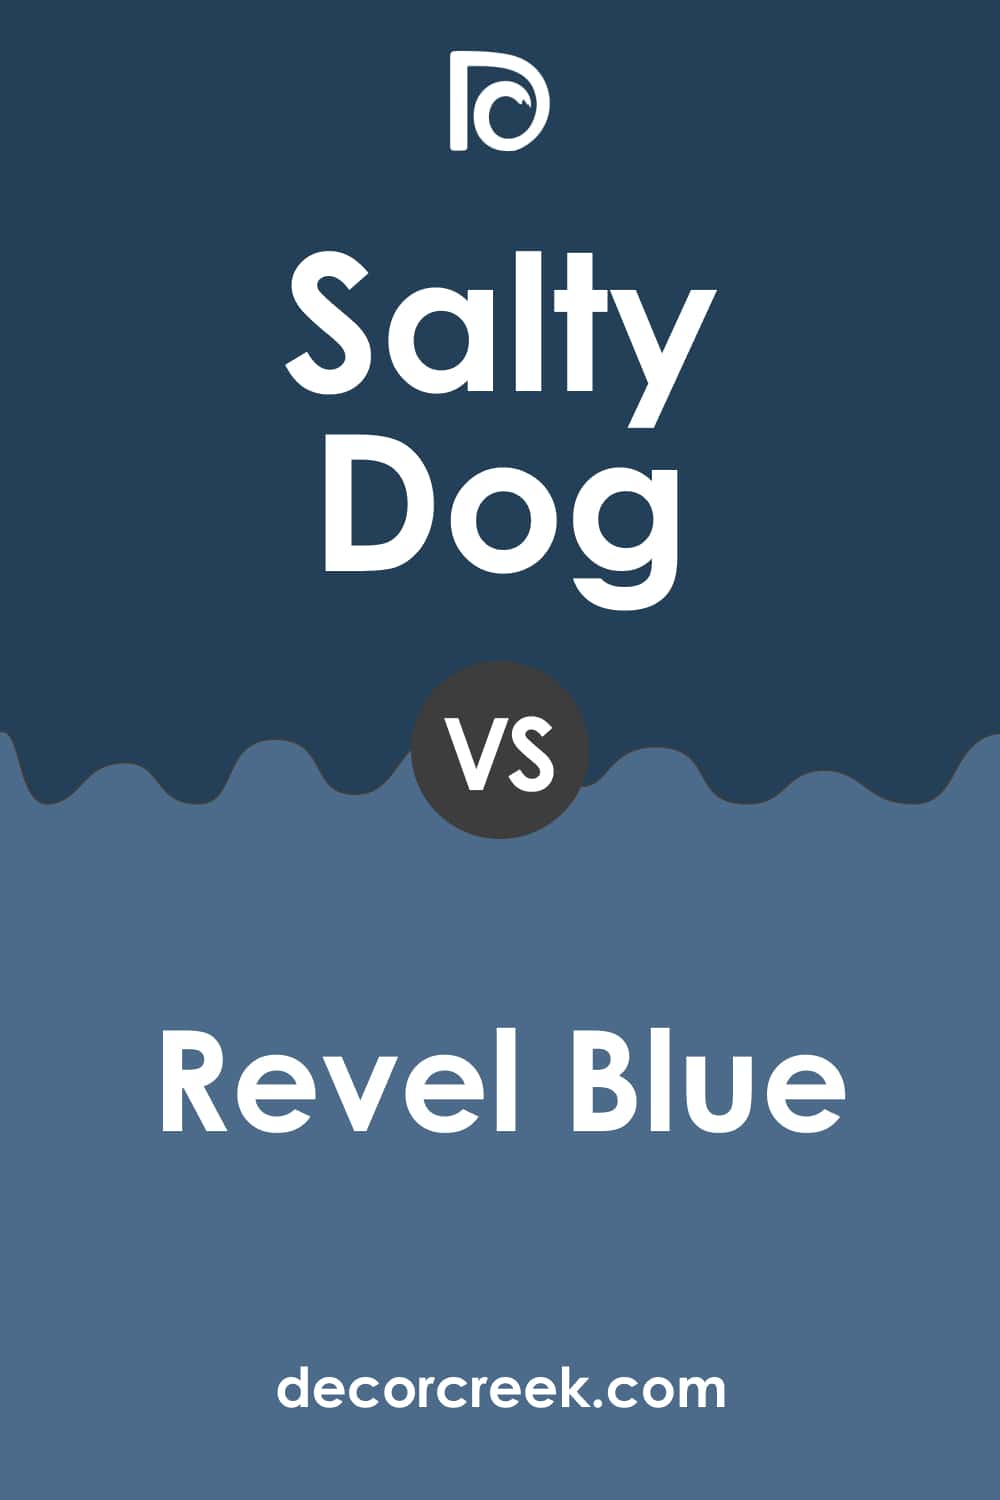 Salty Dog vs Revel Blue